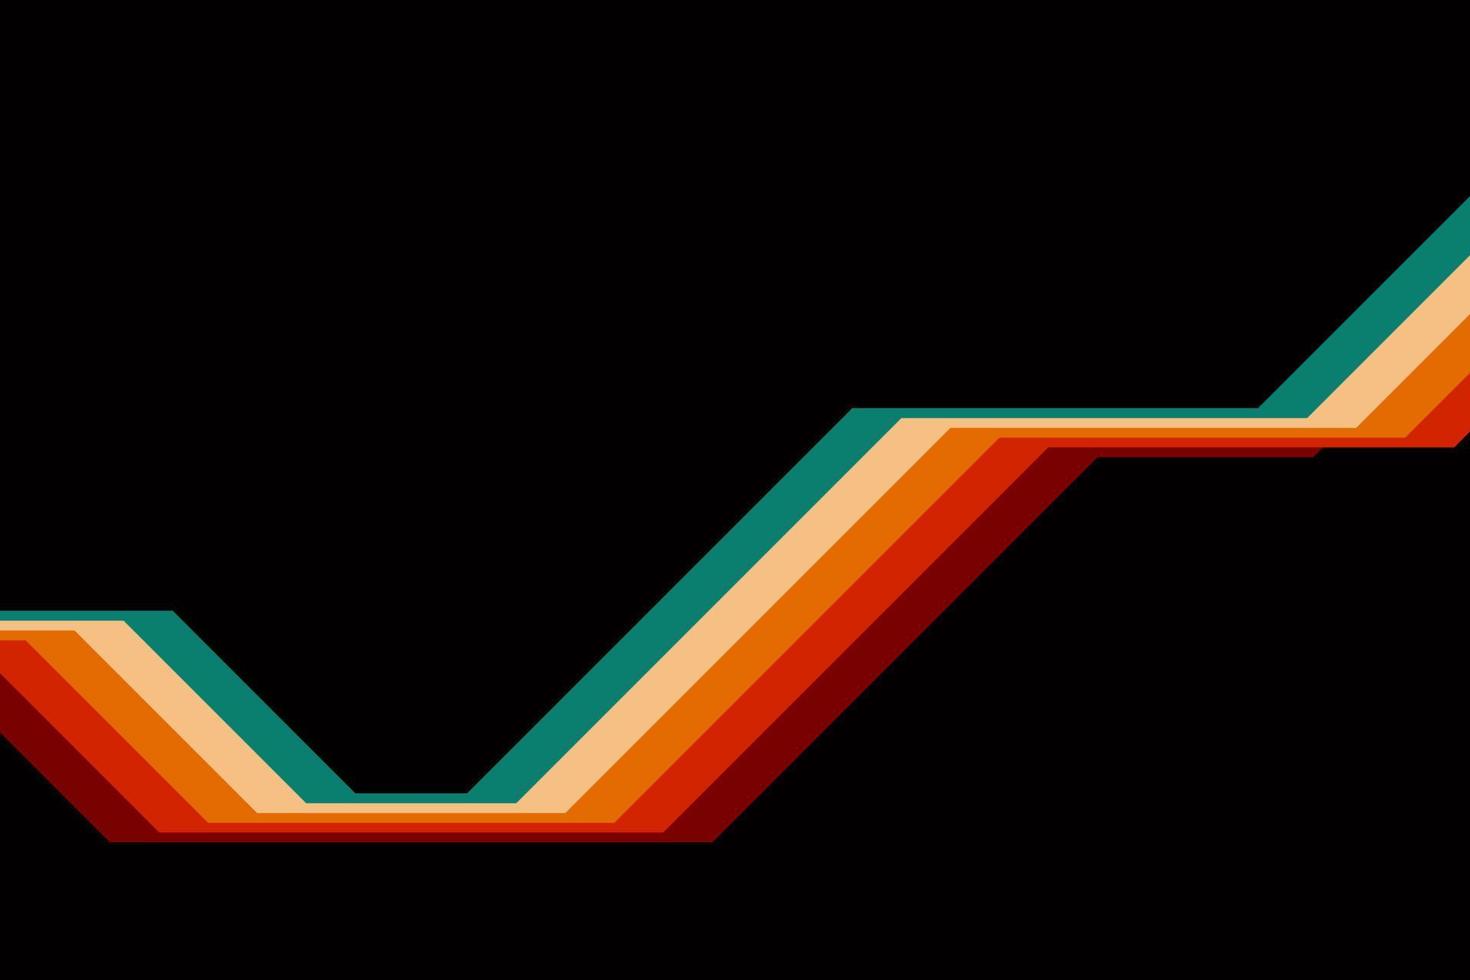 abstraites simples lignes rayées colorées dans un style rétro vecteur